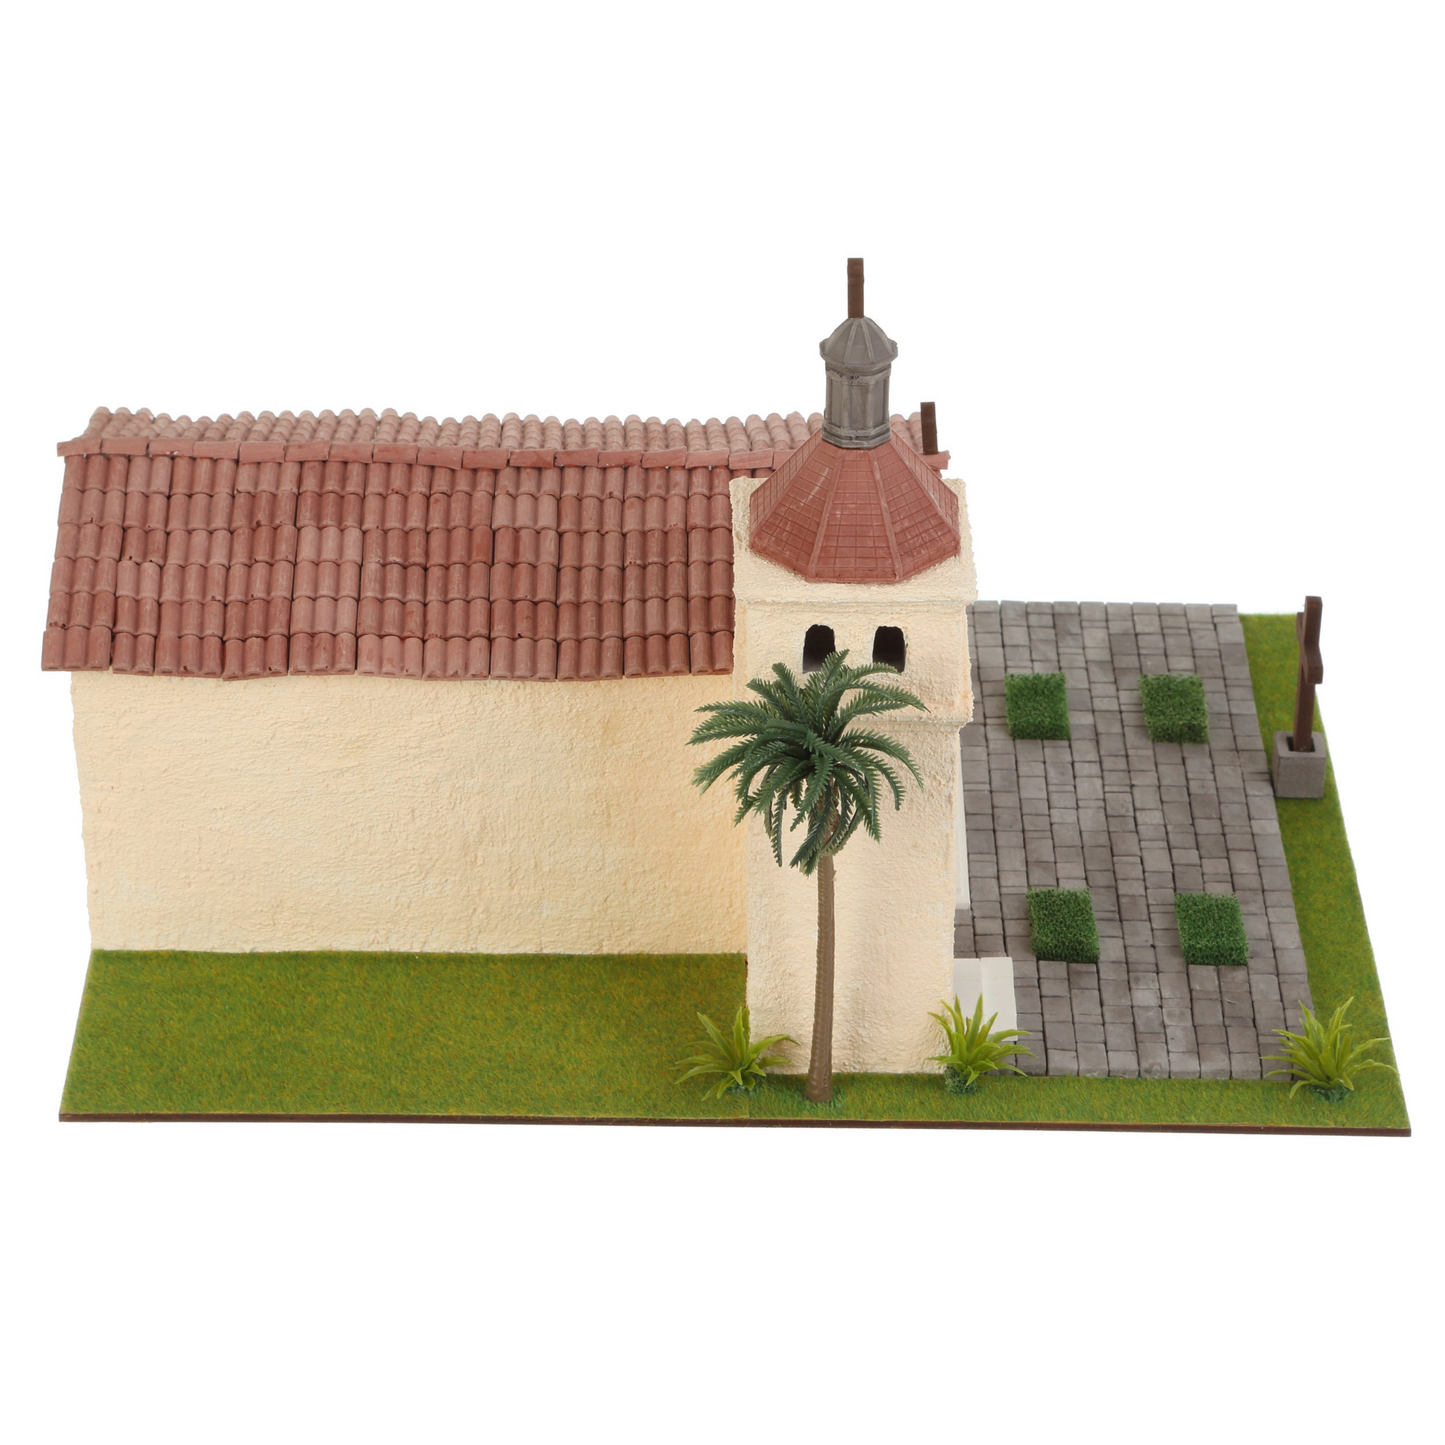 Mini bricks constructor set - Mission Santa Clara de As’s